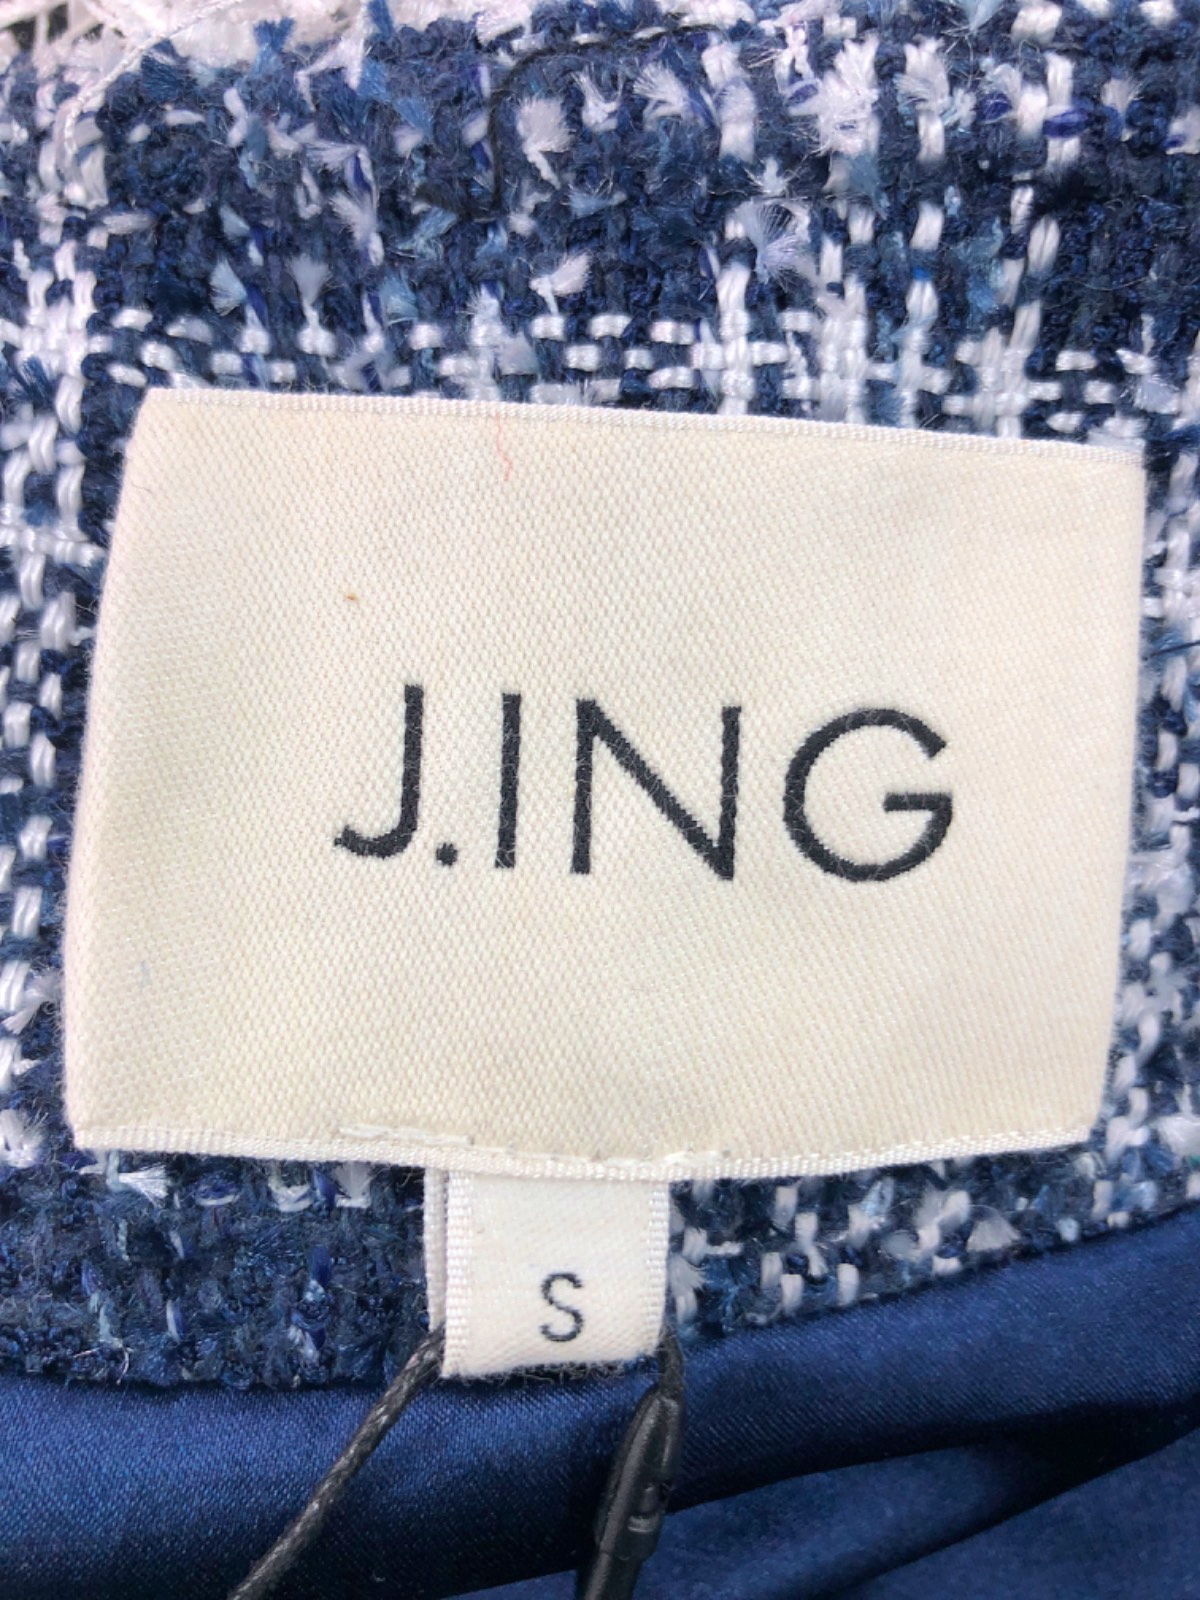 J. ING Blue and White Plaid Tweed Jacket with Fringe Trim UK S